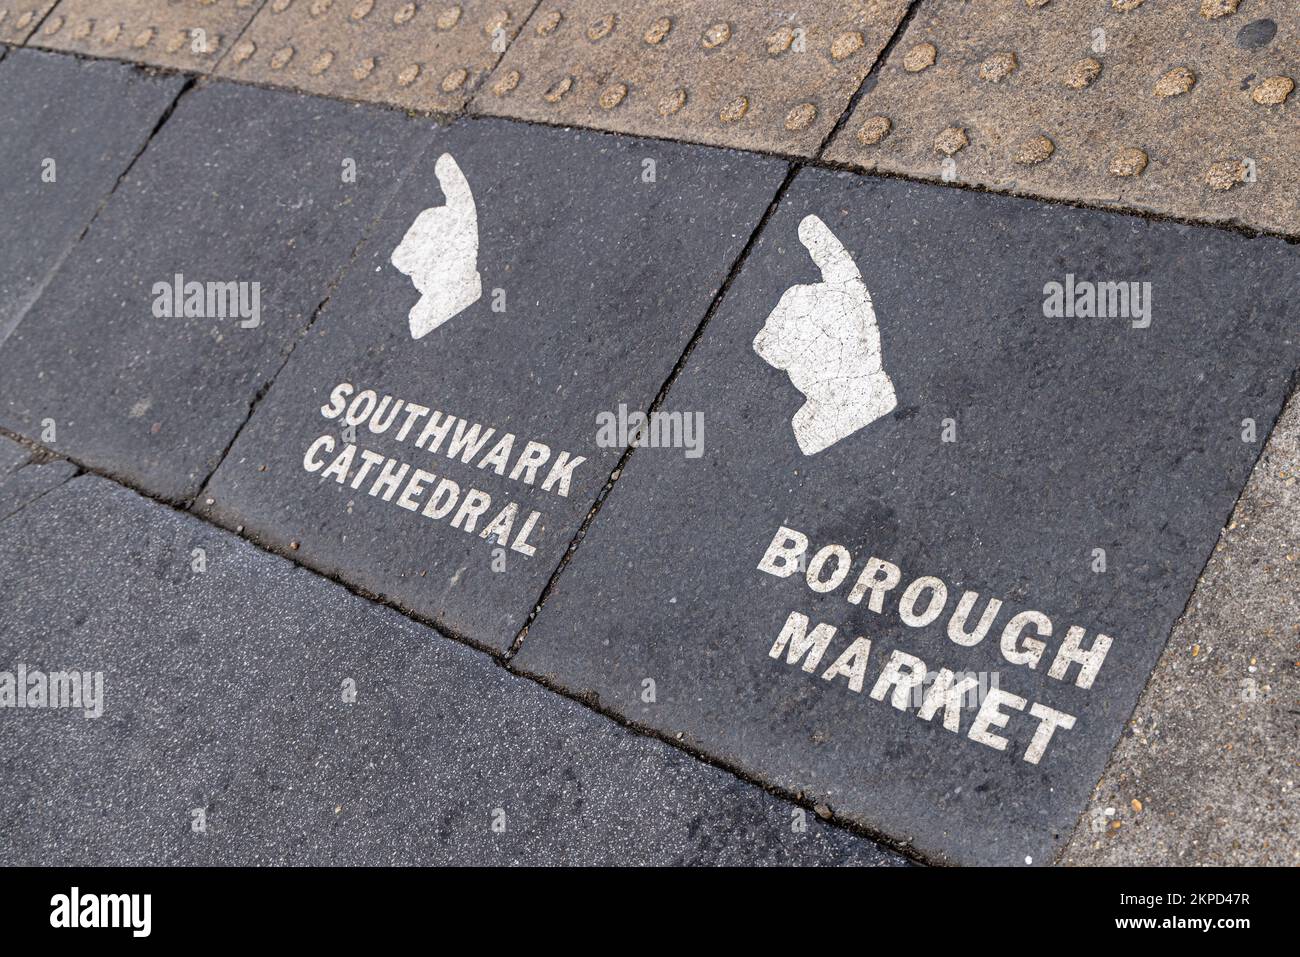 Paving slab signage, South Bank London England Stock Photo